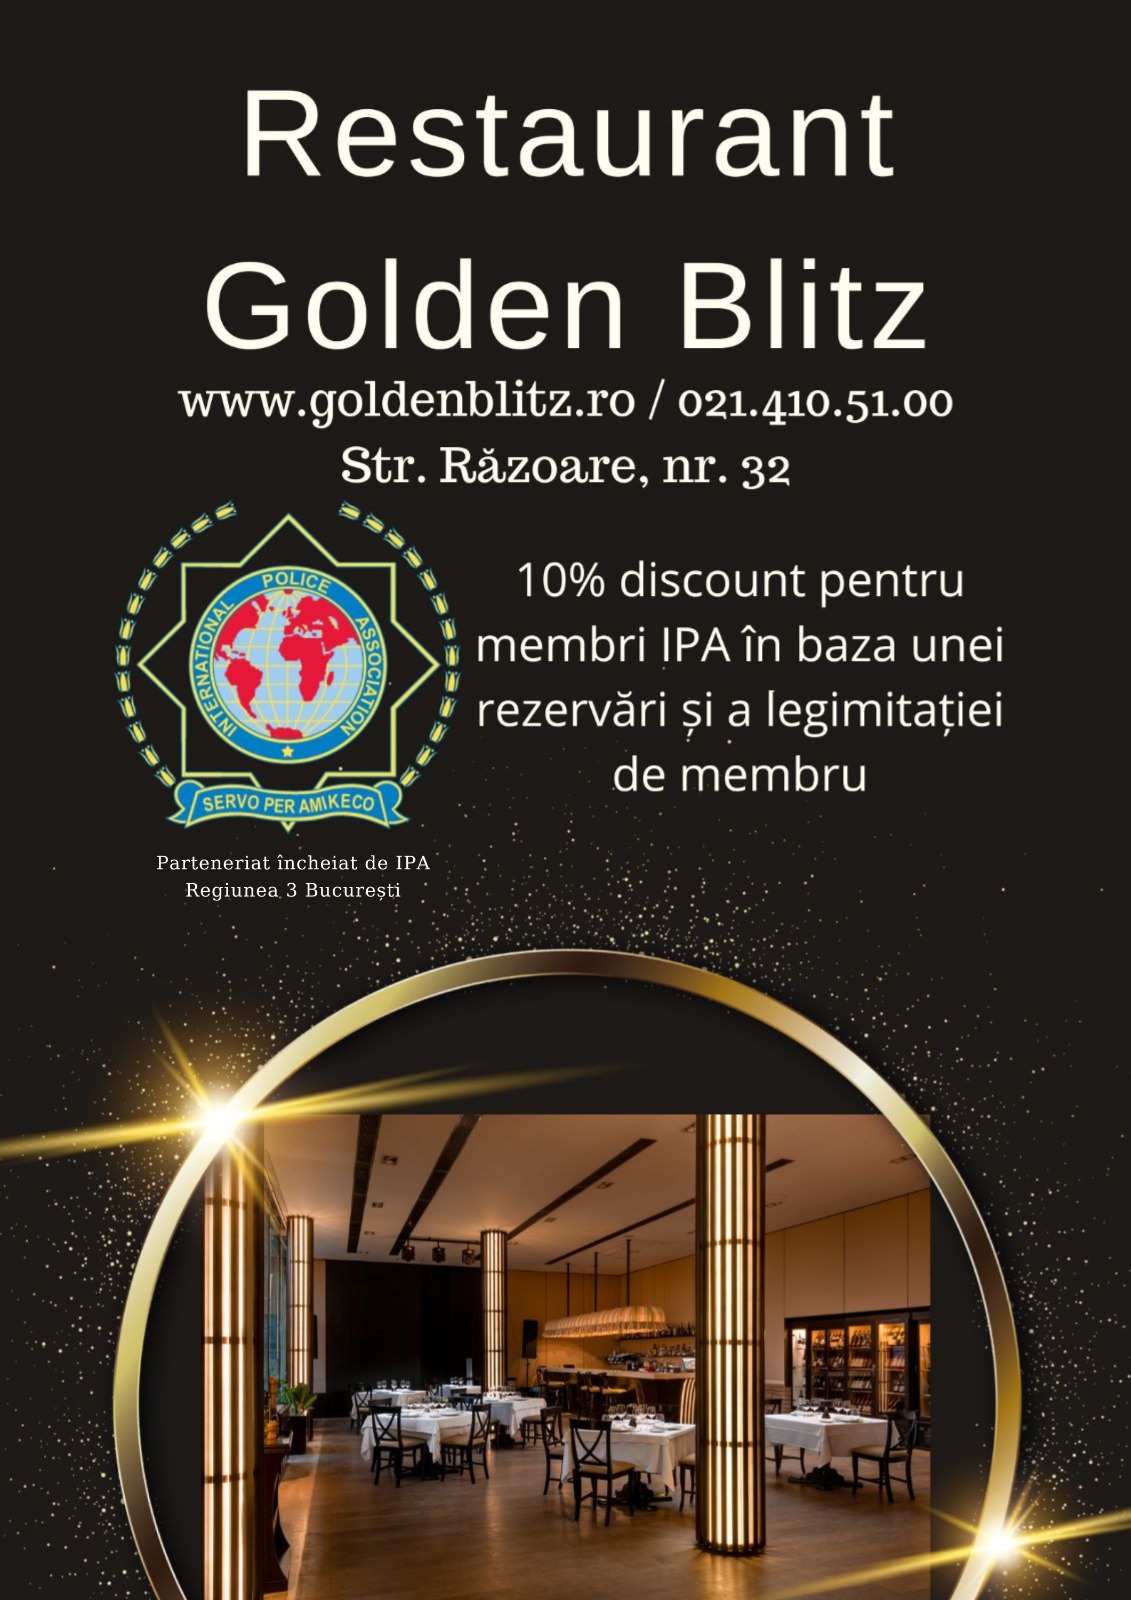 IPA Regiunea 3 Bucuresti – Restaurant Golden Blitz